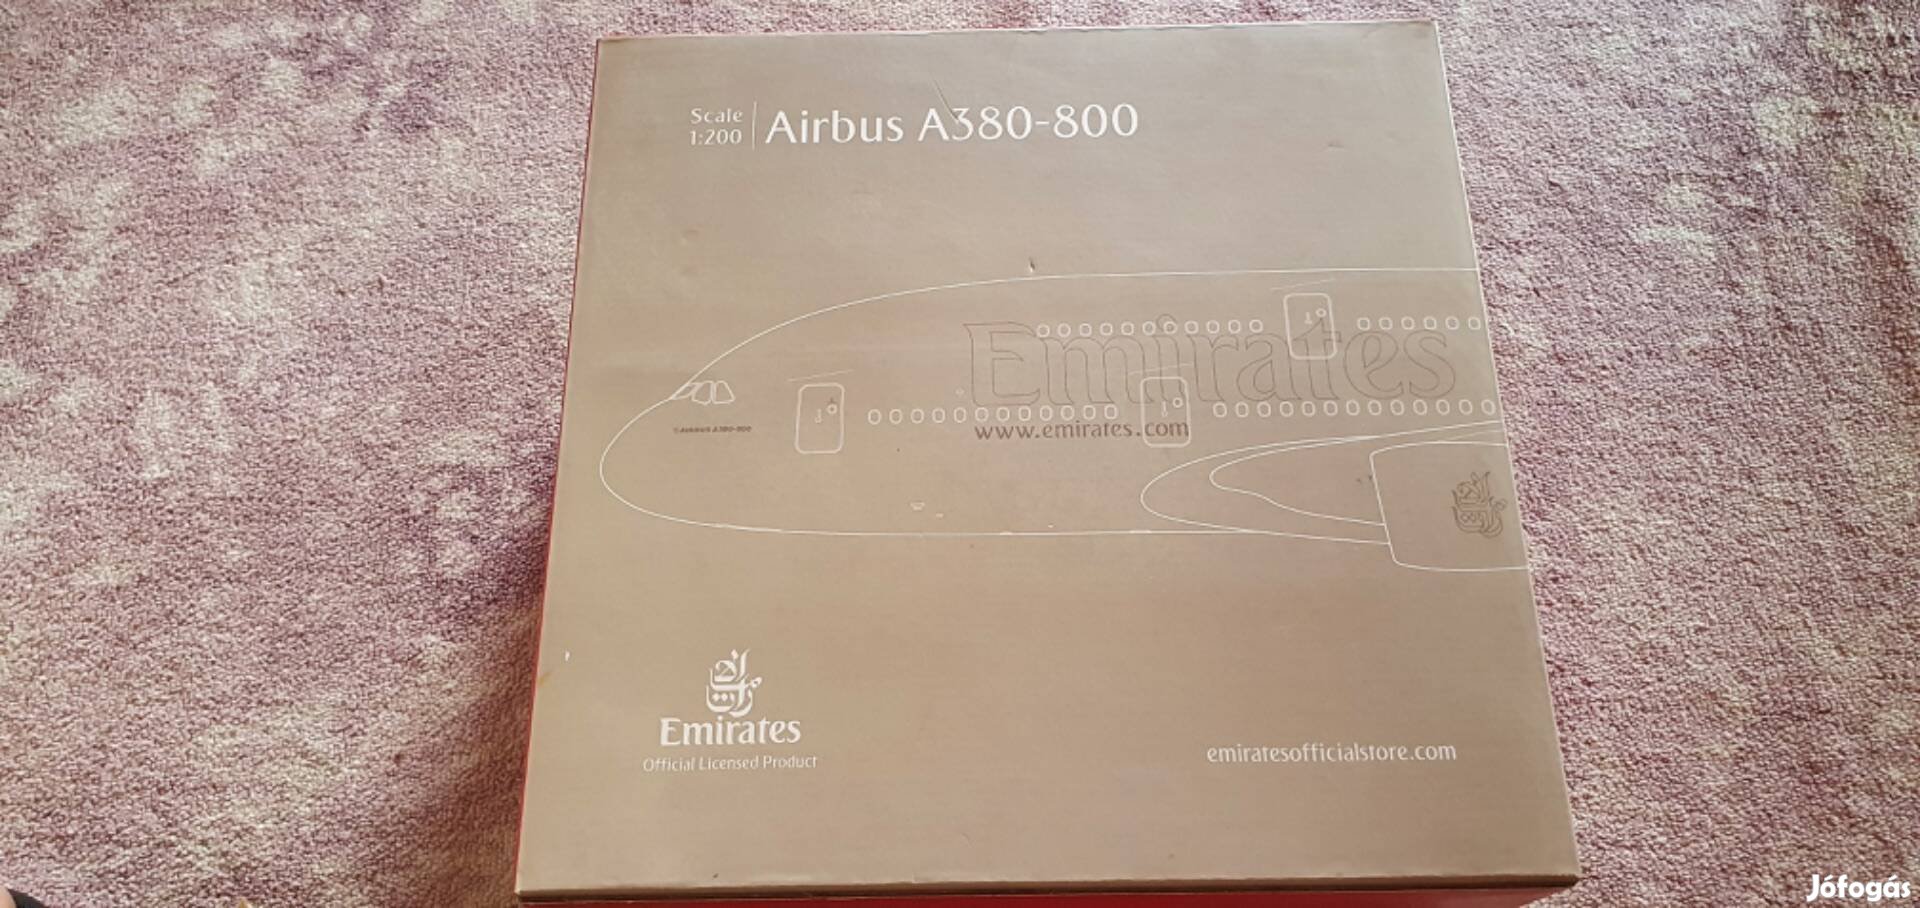 Gemini200 Emirates A380-800 Fém Repülőgépmodell